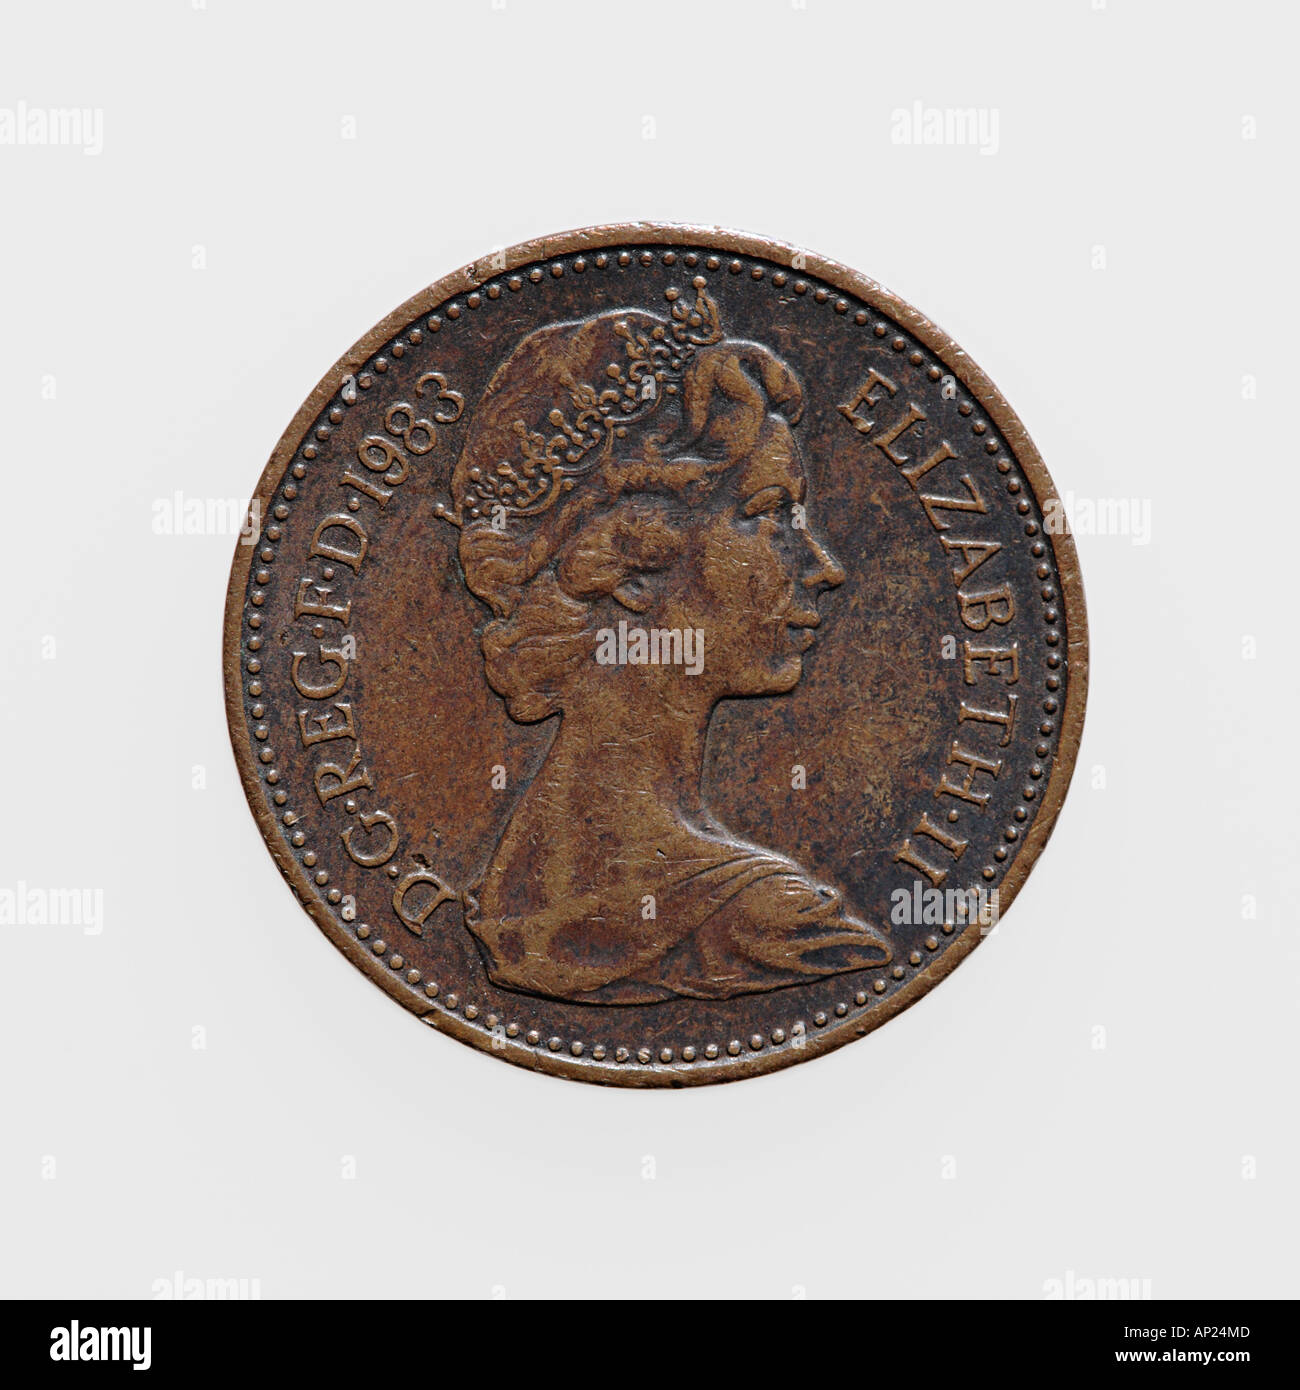 Monnaie britannique : Pound, Penny, Pence & Livre Sterling